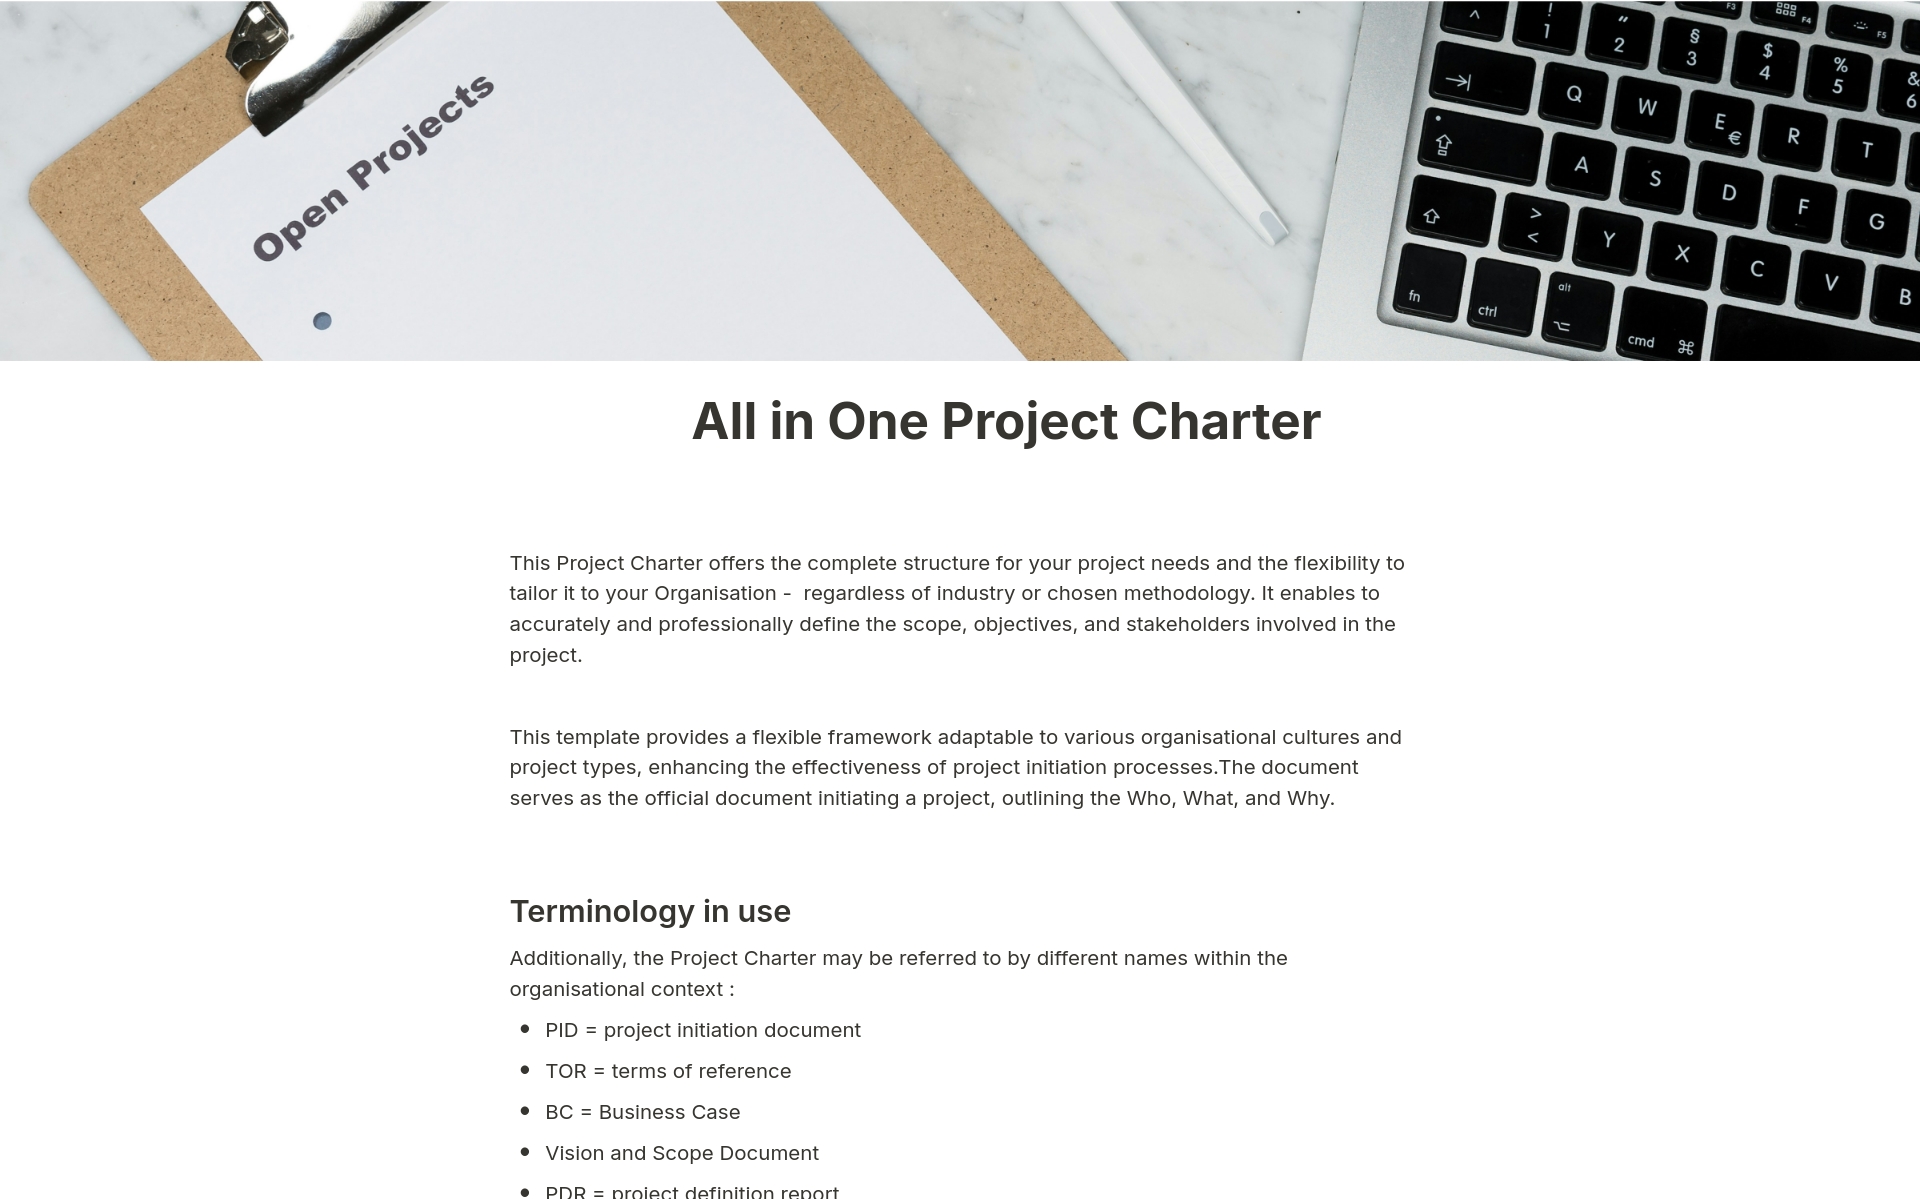 En förhandsgranskning av mallen för All in One Project Charter